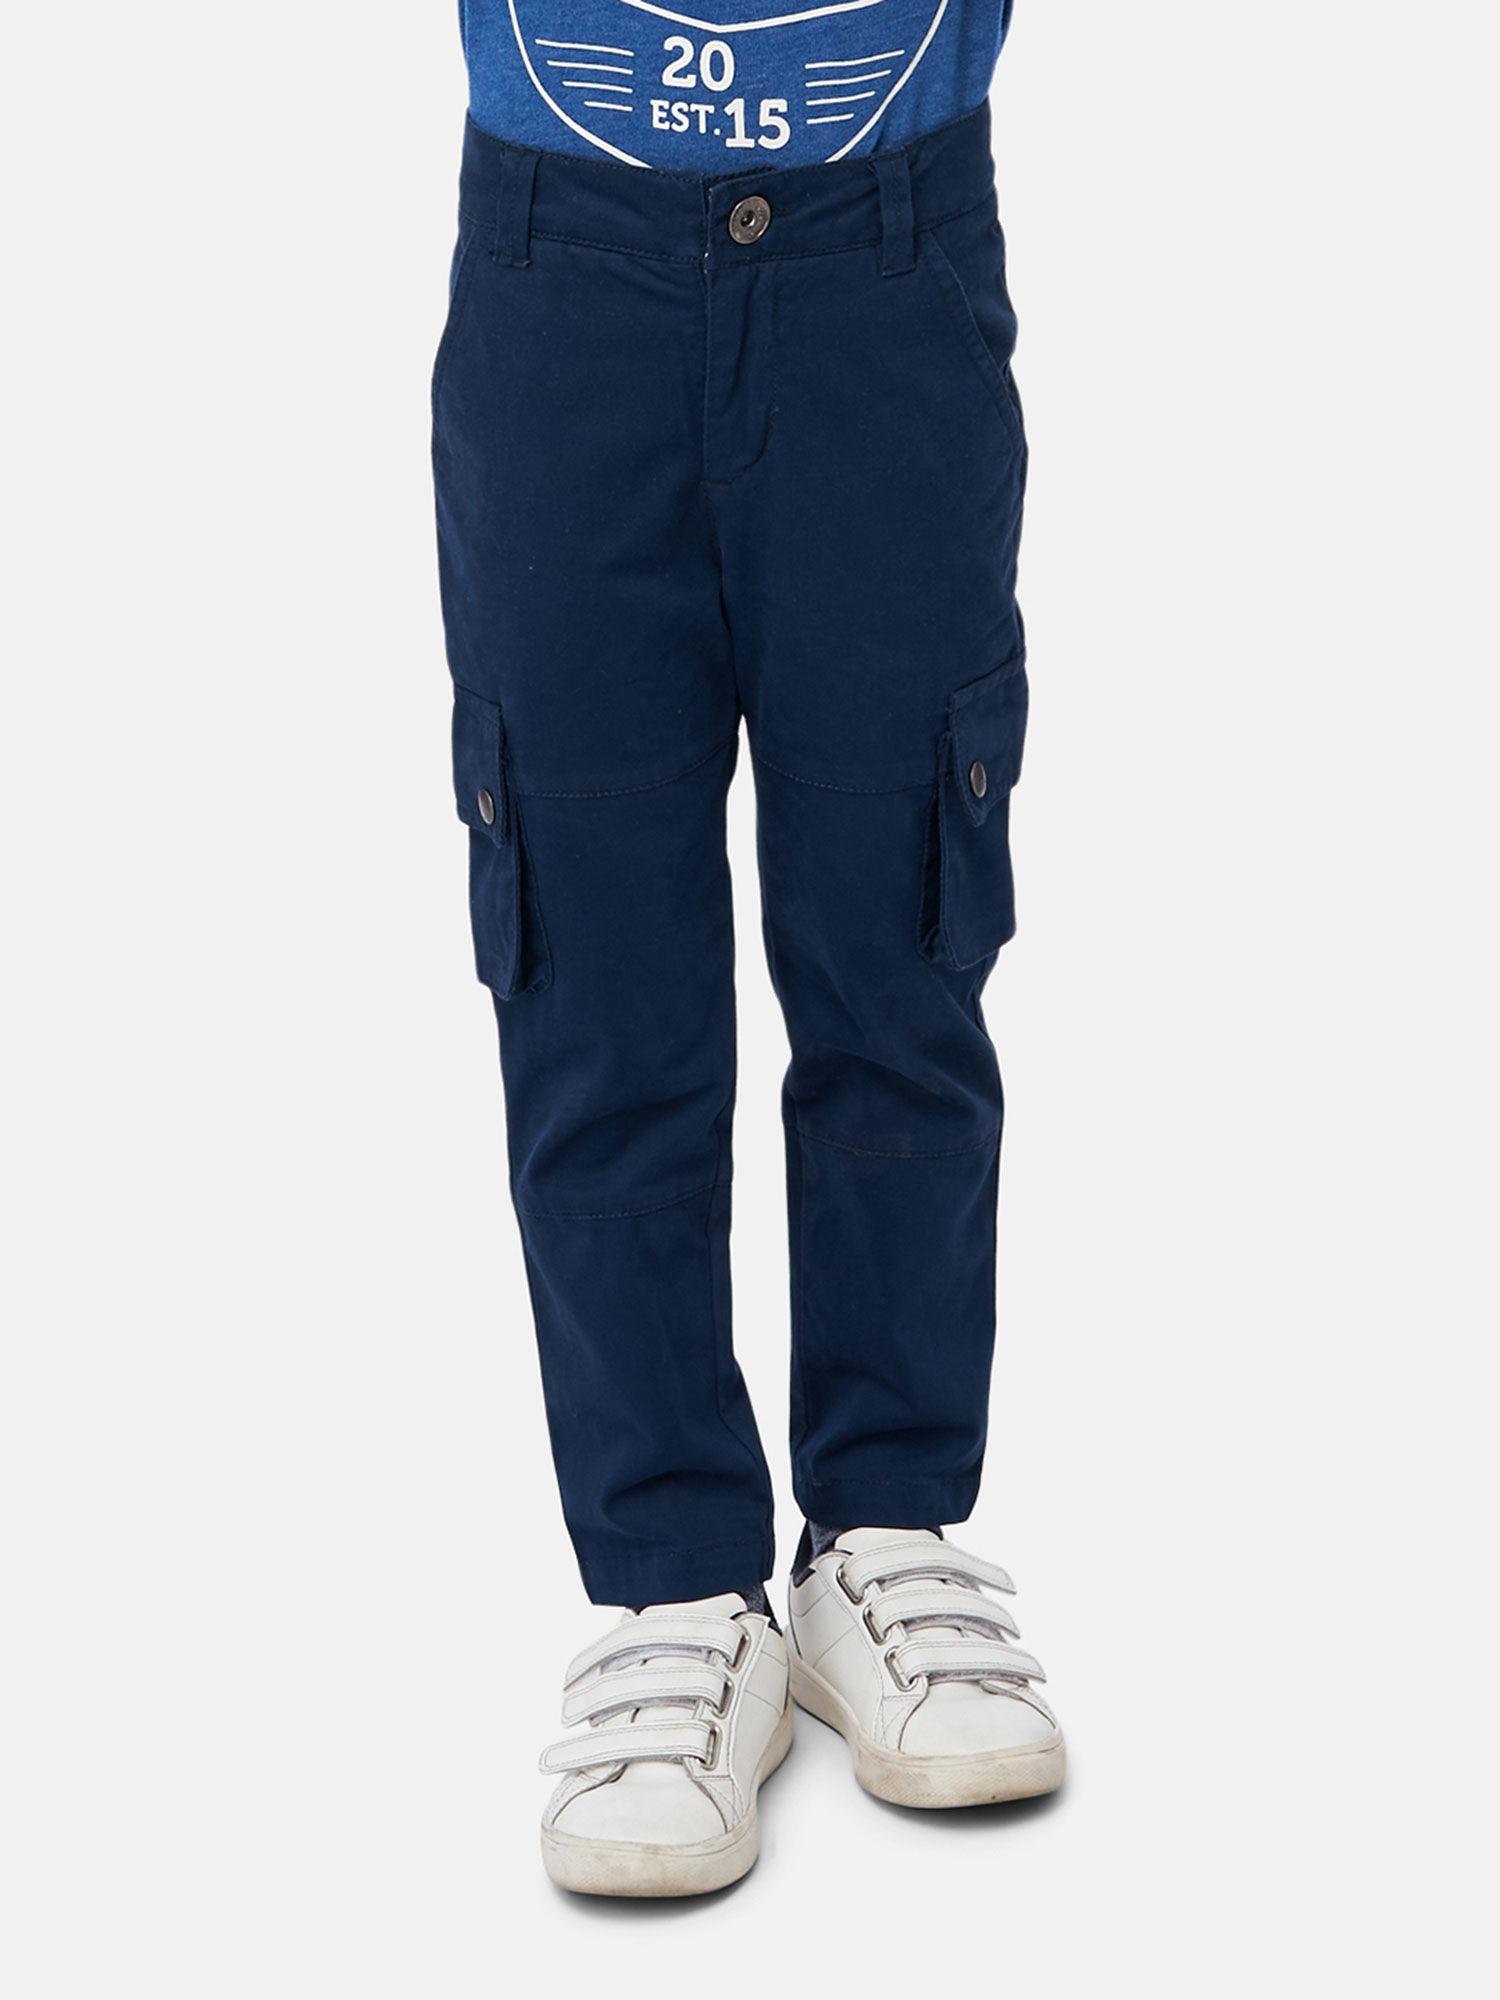 navy blue trouser